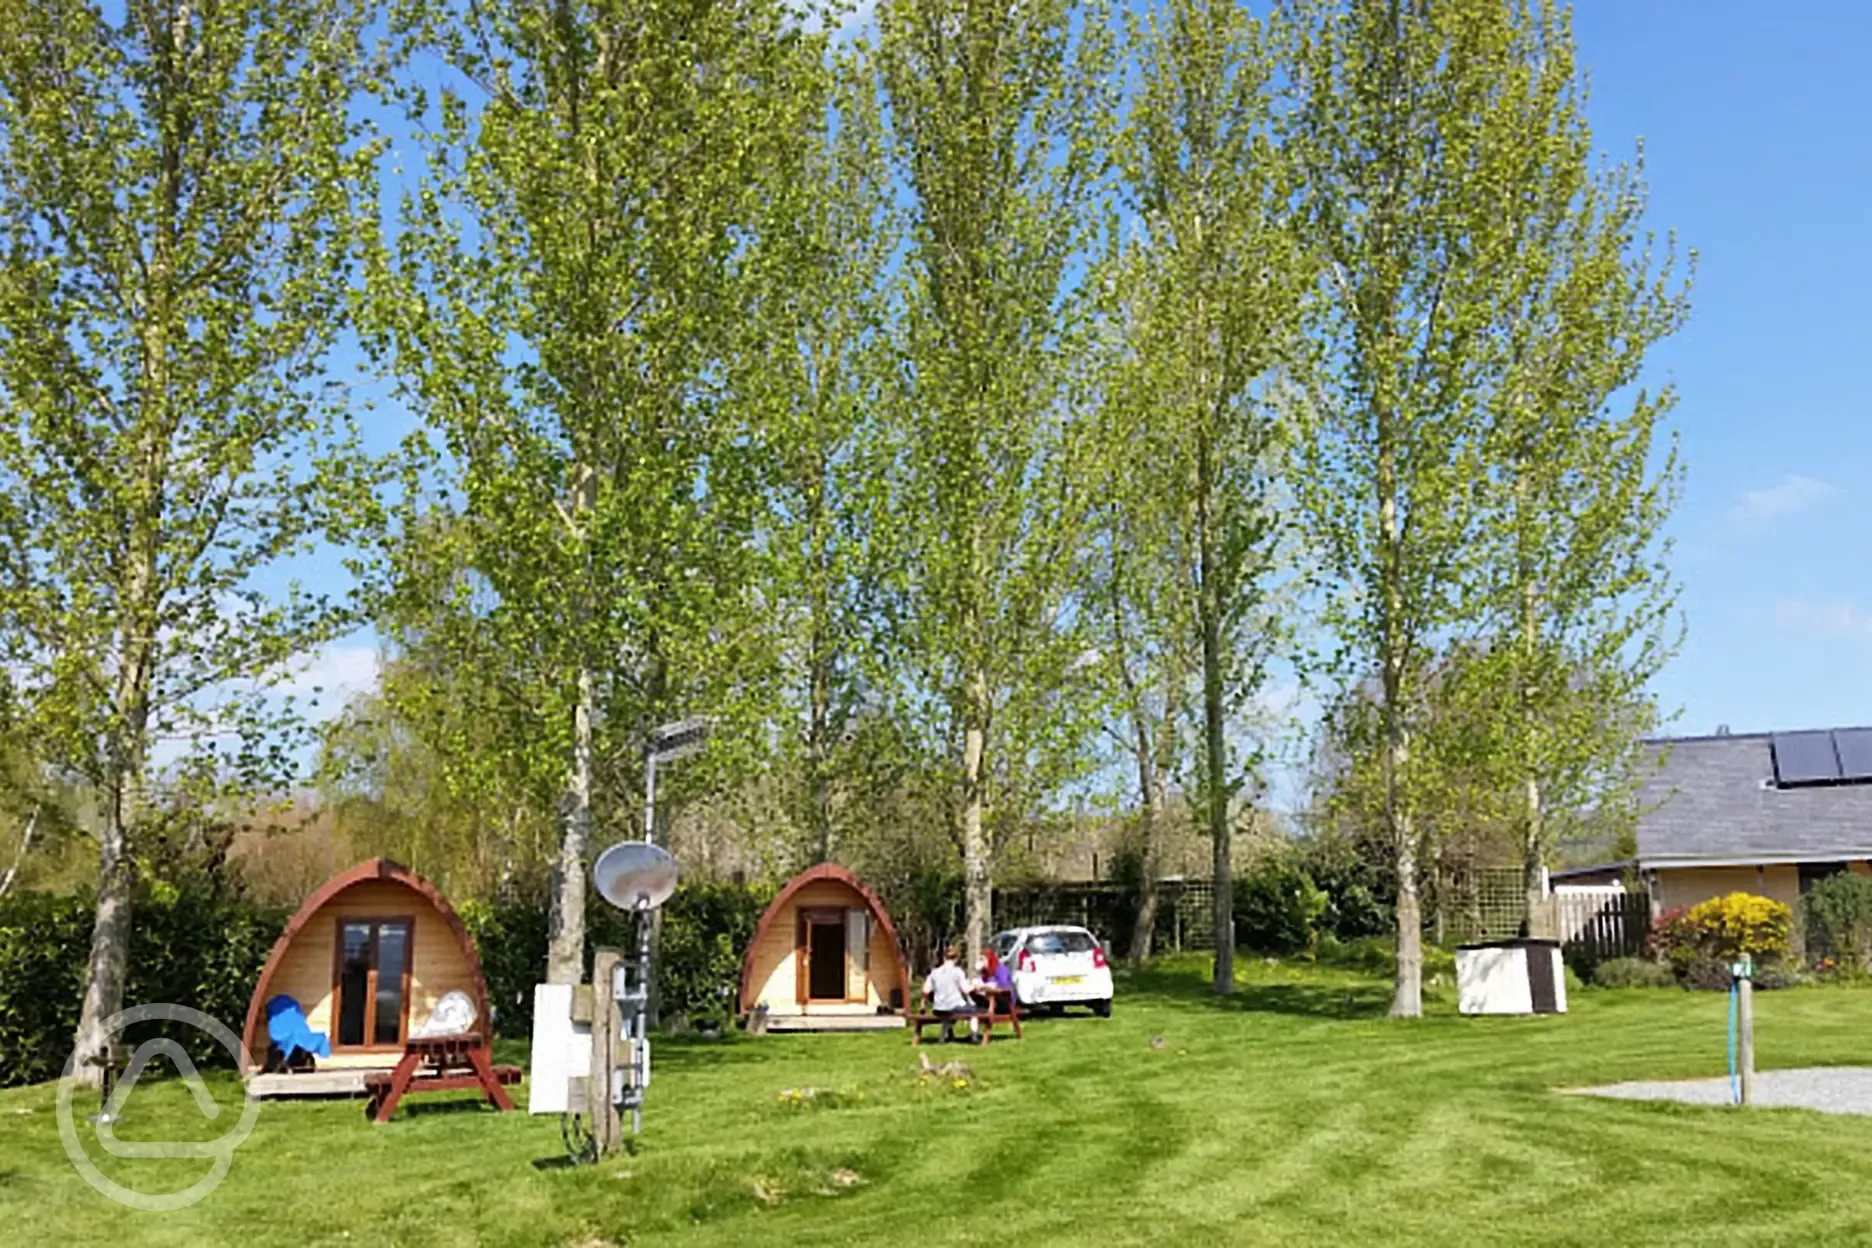 Camping pods at Daisy Bank Caravan Park